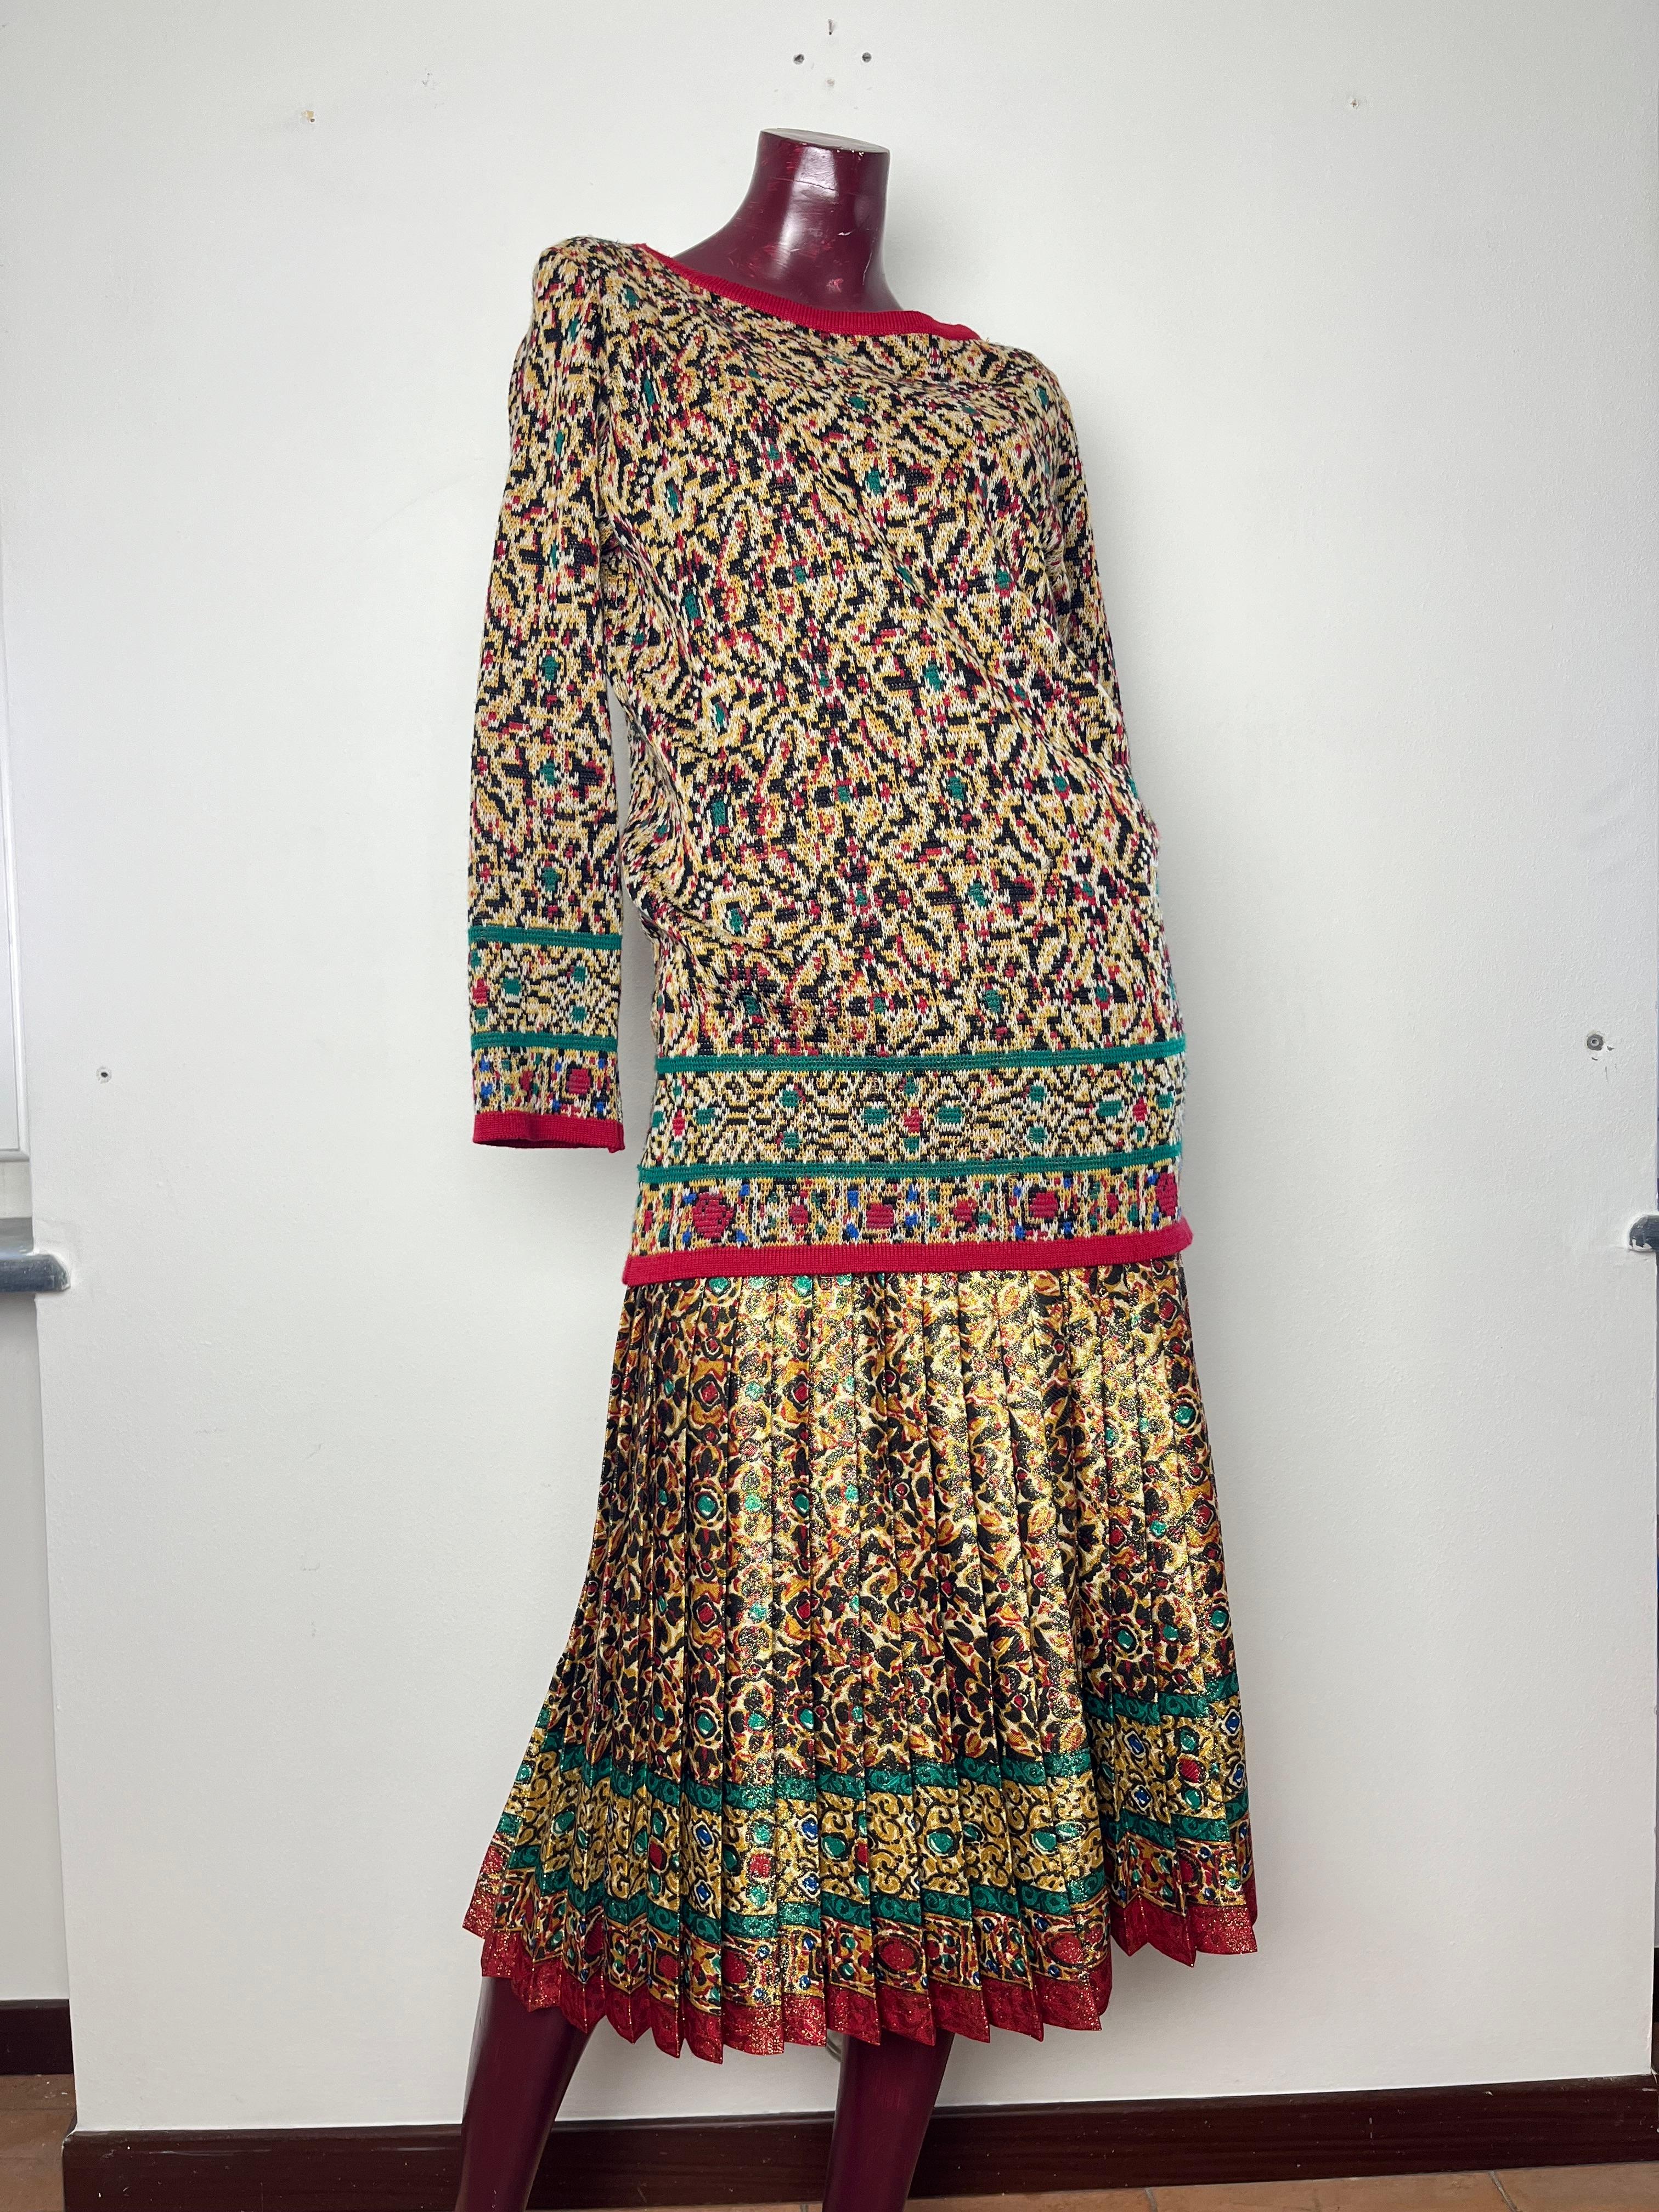 Faltenrock mit Blumendruck Kollektion 1984  mehrfarbiges Kleid aus Seidengemisch von Yves Saint Laurent mit folgenden Eigenschaften: plissierter, floraler Allover-Druck, hohe Taille und gerader Saum.

Mehrfarbiger 80er-Jahre-Pullover aus Strickwolle